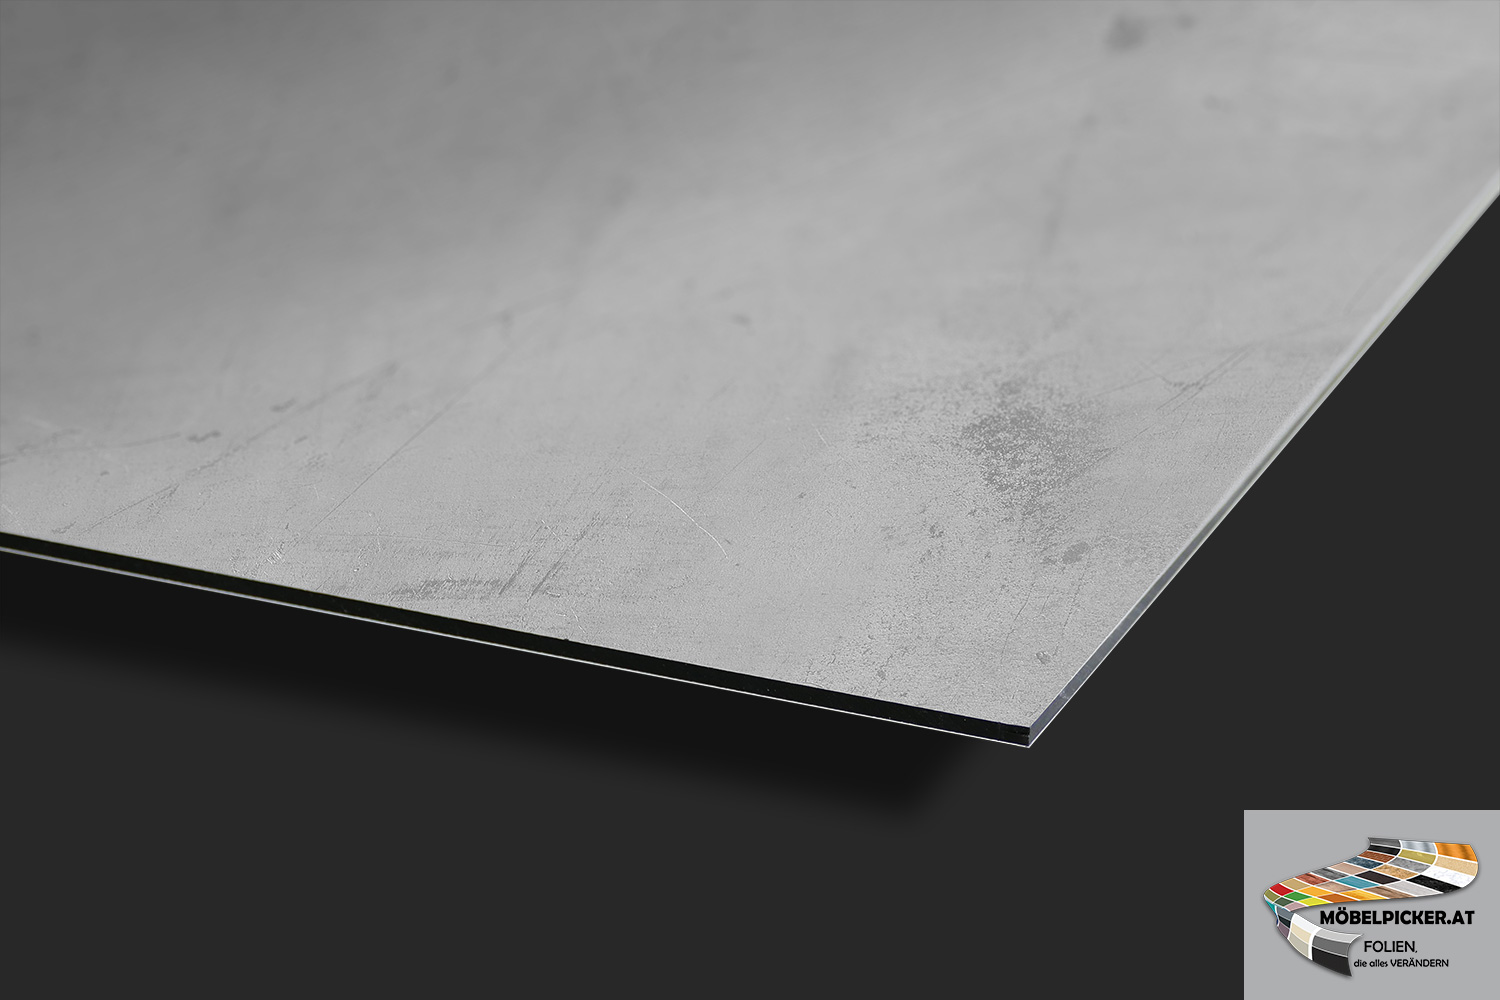 Alu-Design-Platte Beton Metallic - Aluminiumverbundplatte für Küchenrückwände, Fliesenspiegel, Fliesenrückwände, Küchen